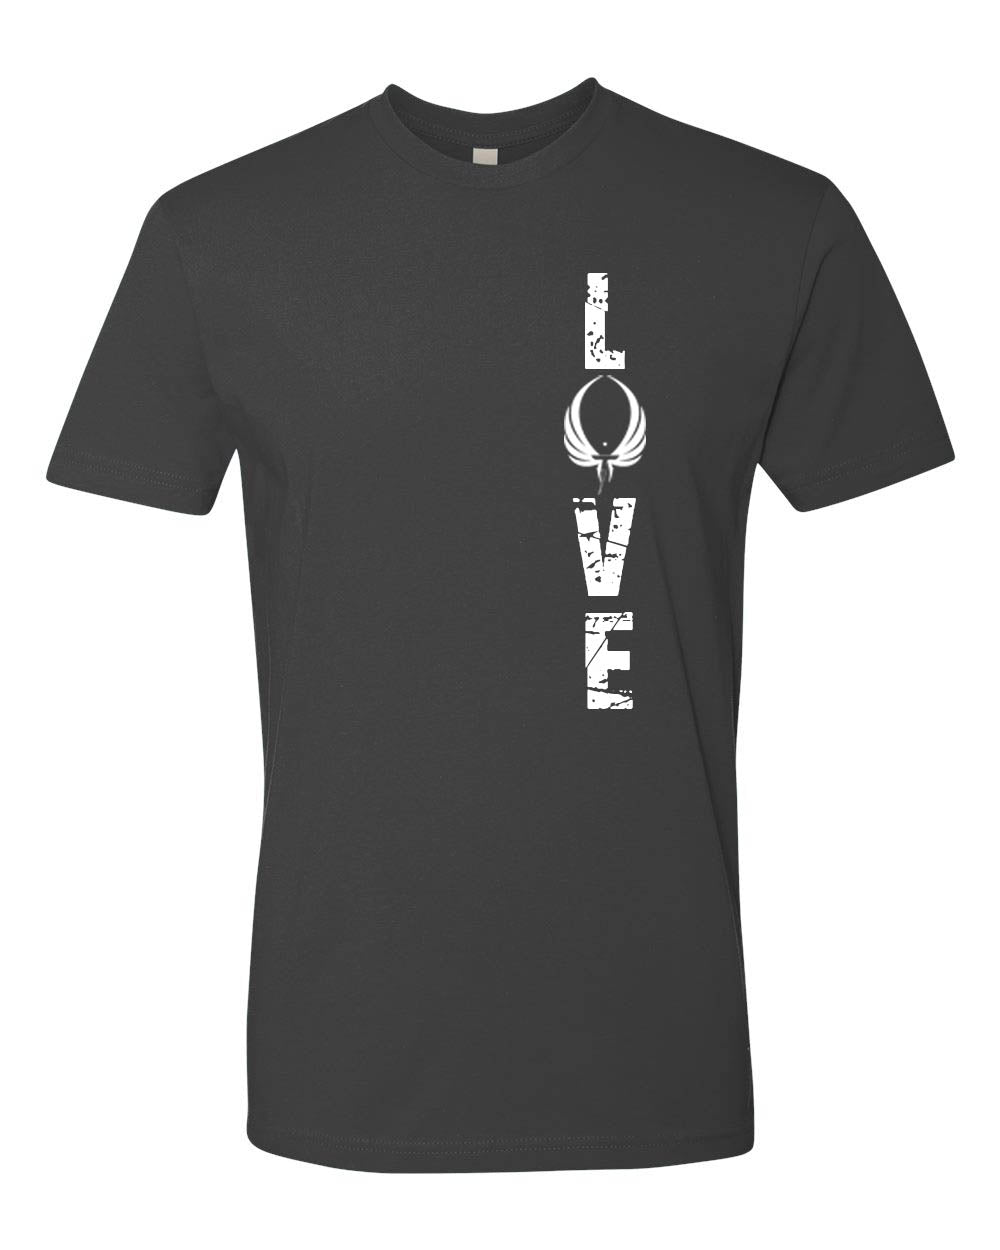 Love Titan T-Shirt